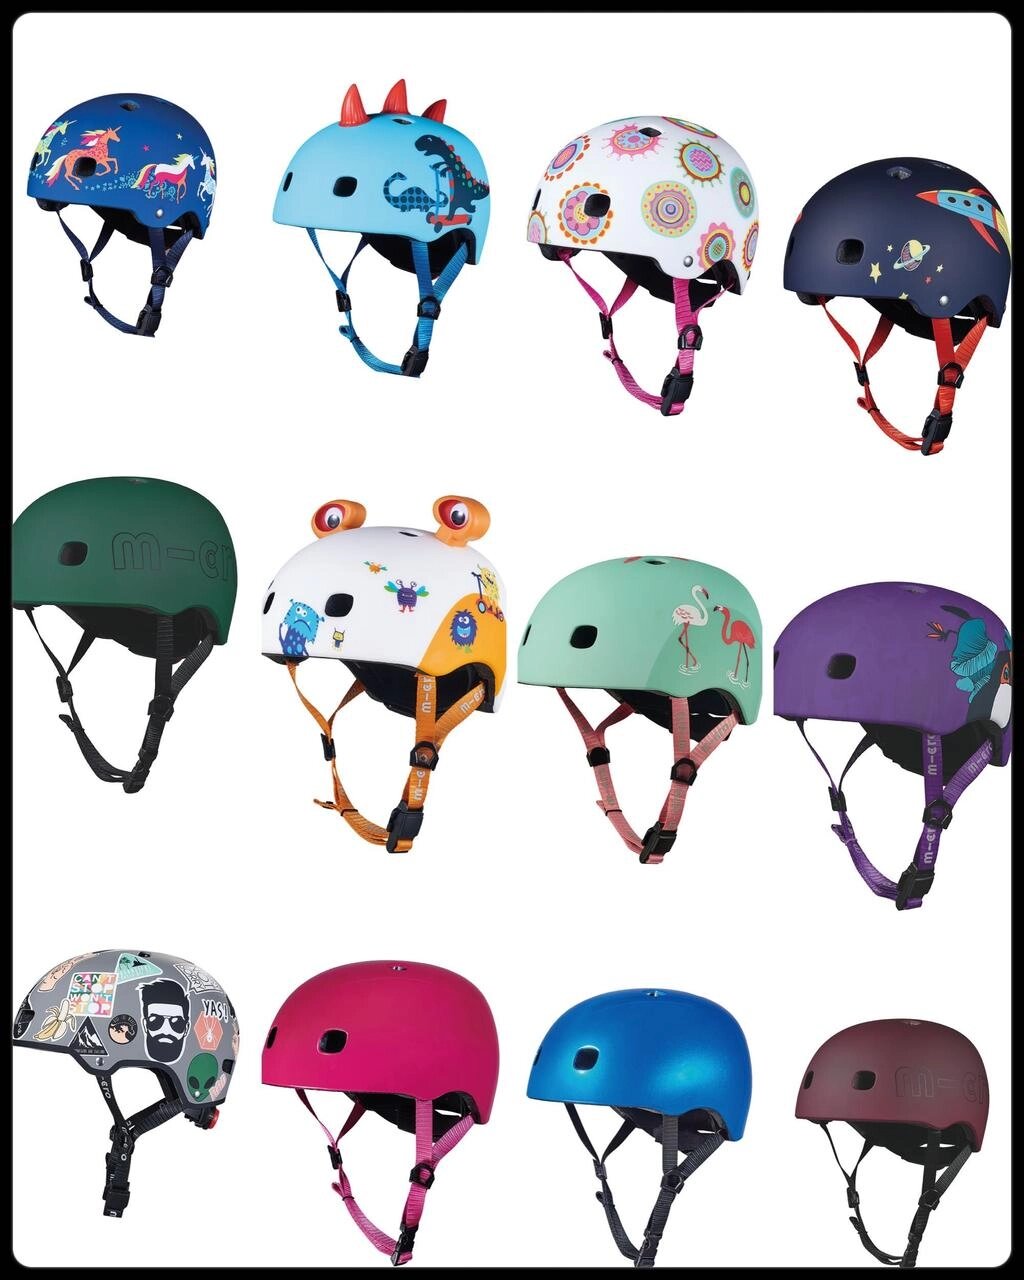 Шолом Micro дитячий захисний шолом для катання на самокаті, роликах від компанії Artiv - Інтернет-магазин - фото 1